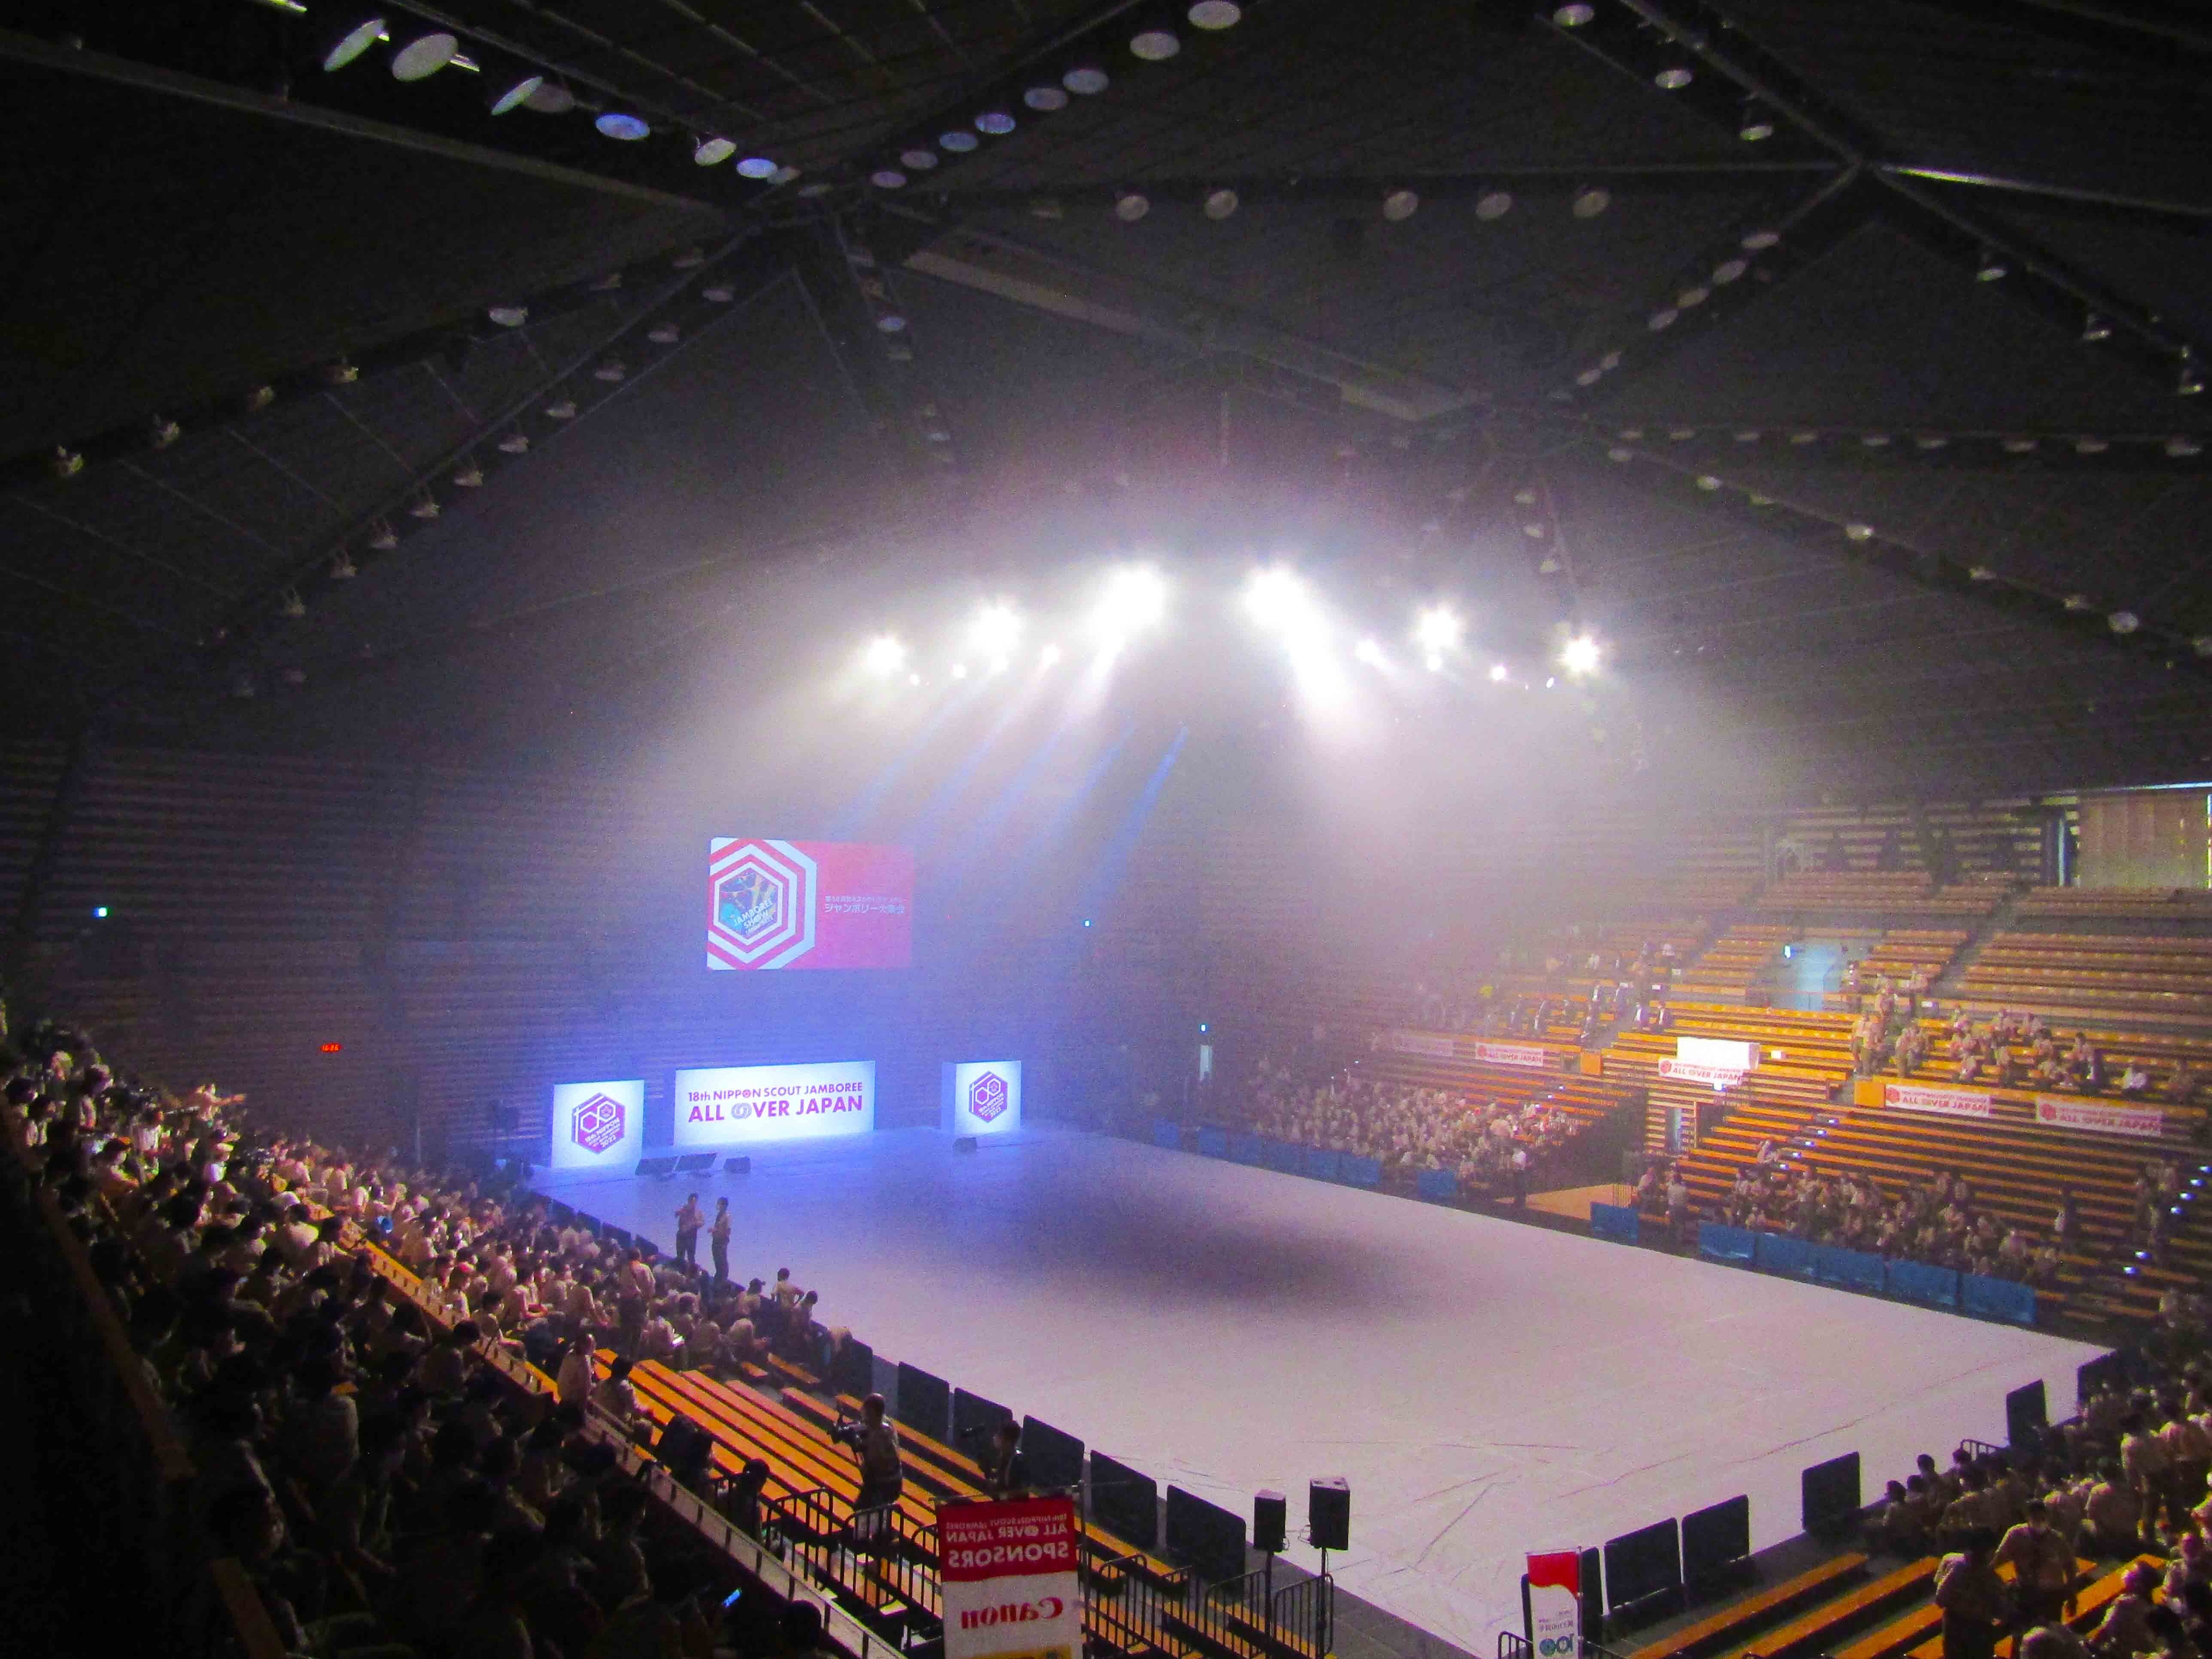 ボーイスカウト日本連盟主催のジャンボリー大集会のライブ配信にフルノシステムズの無線LANが採用